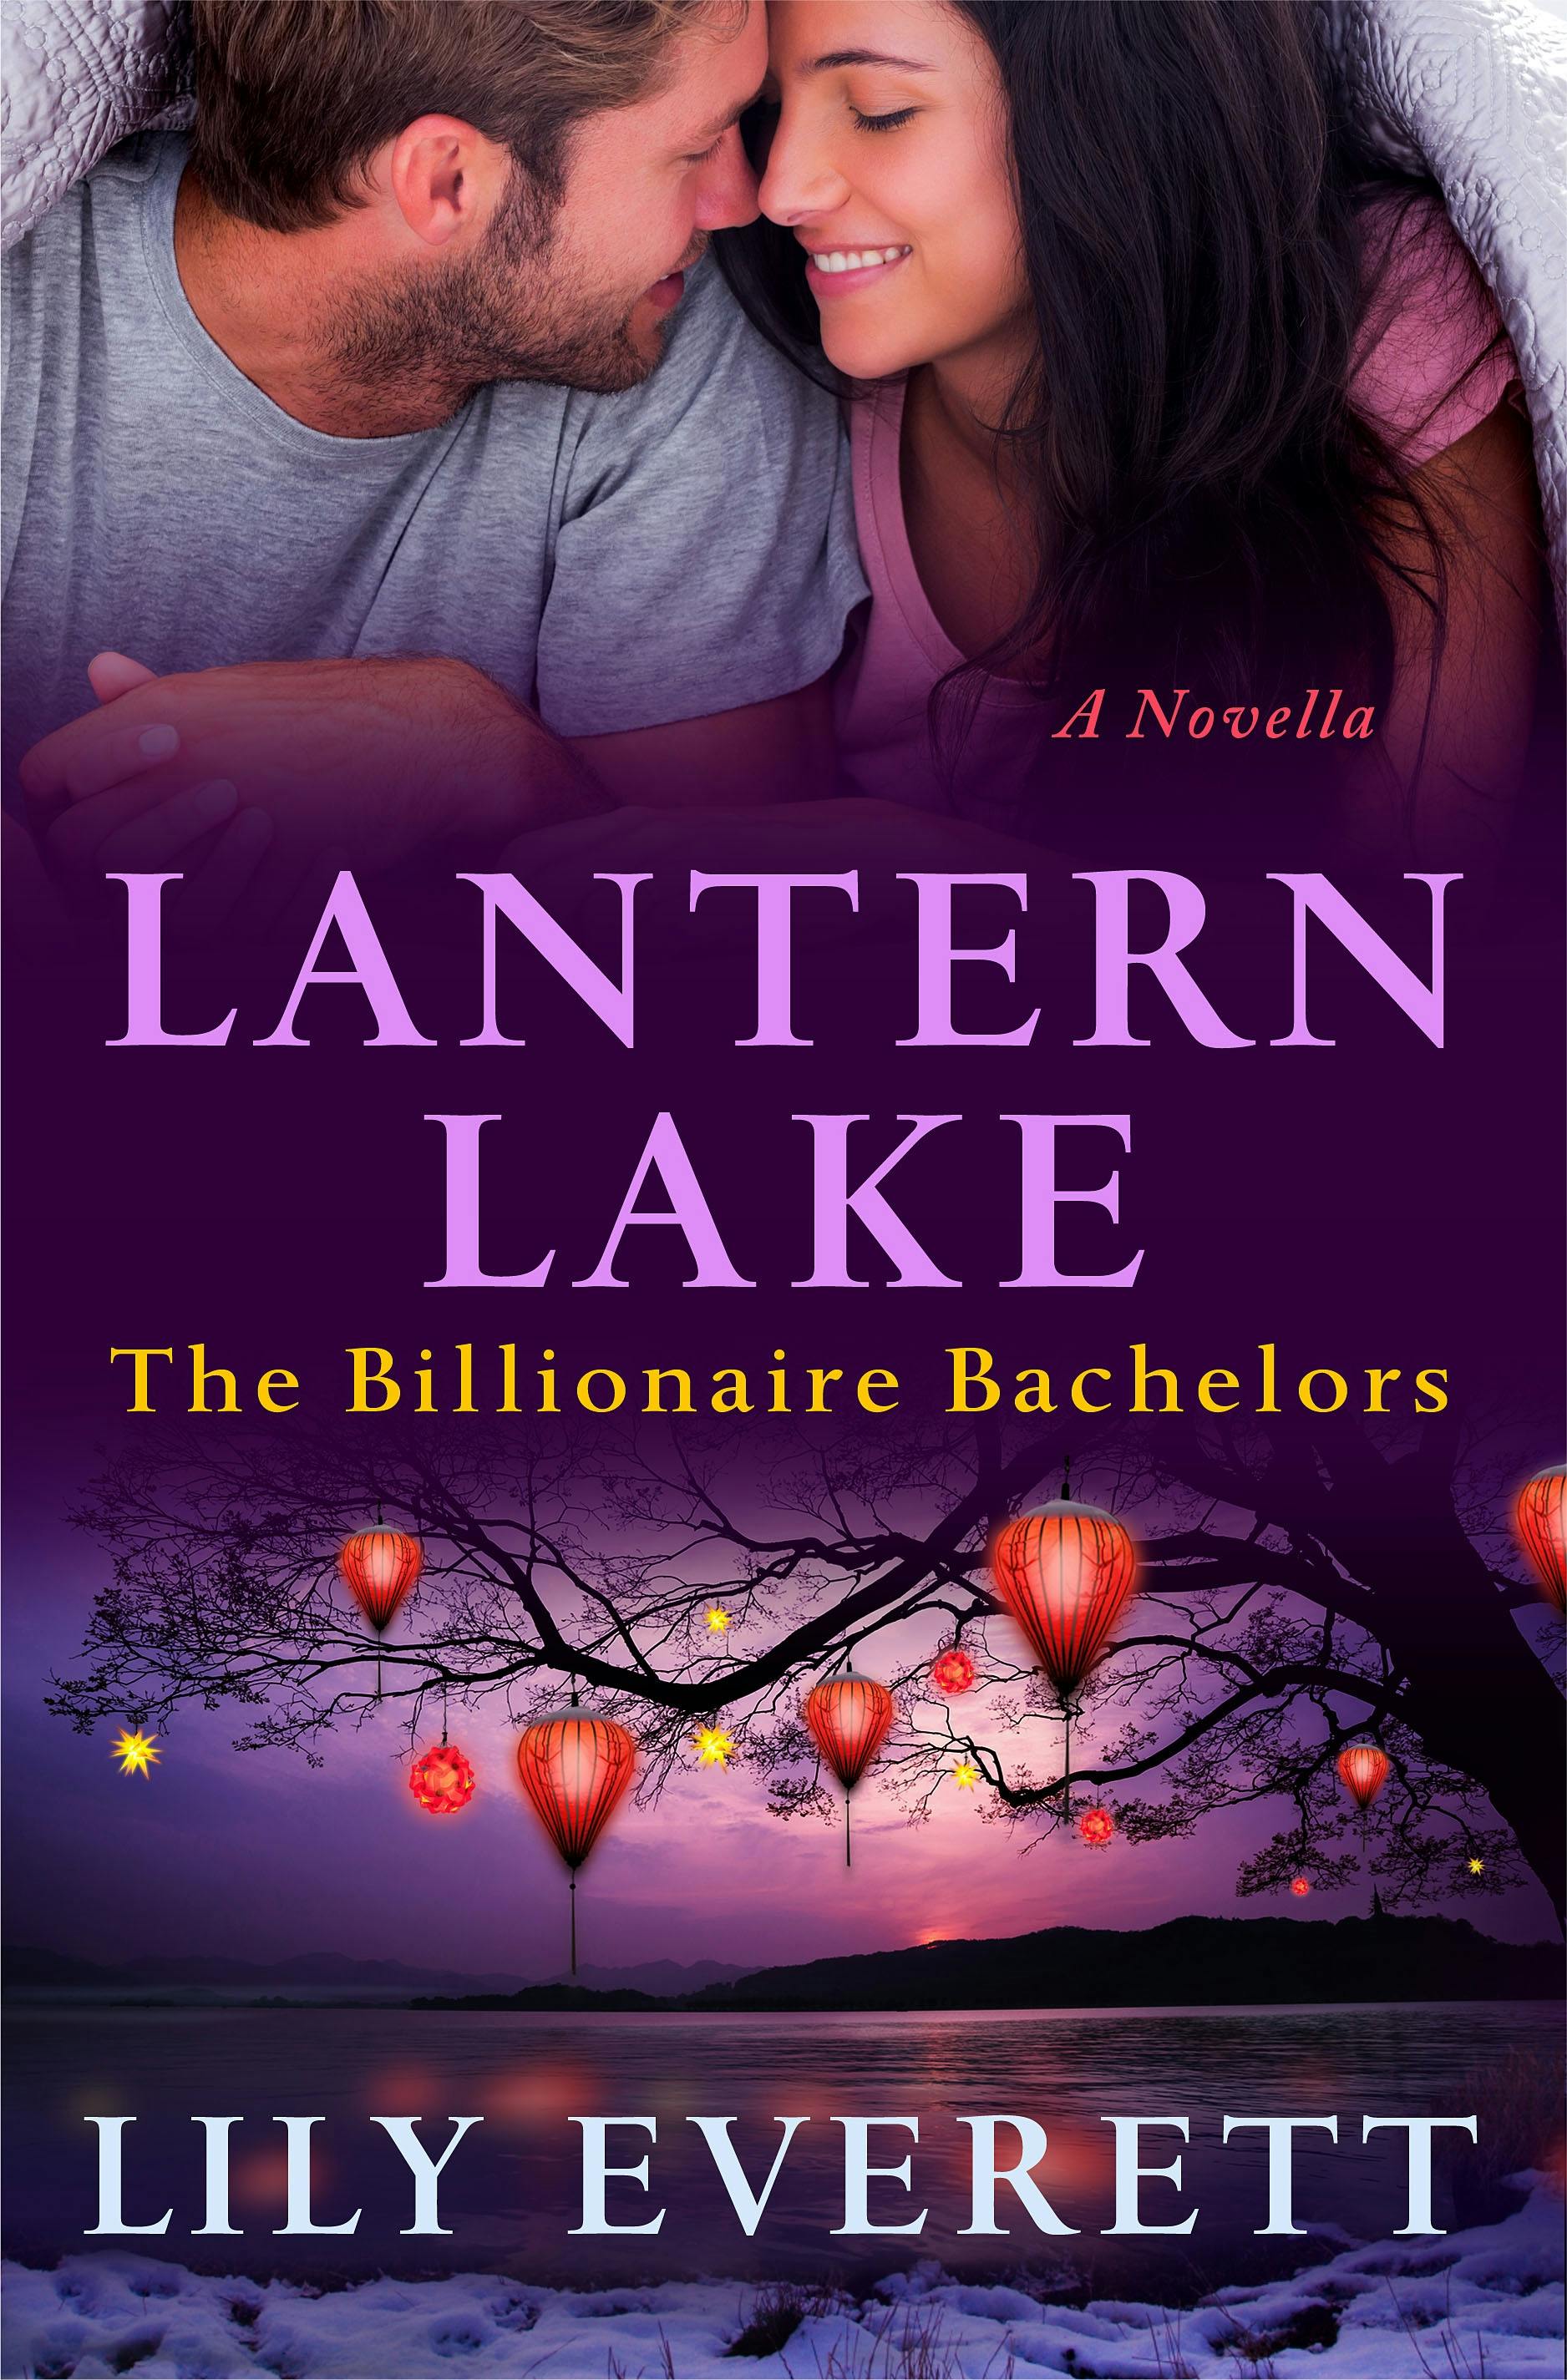 Image of Lantern Lake